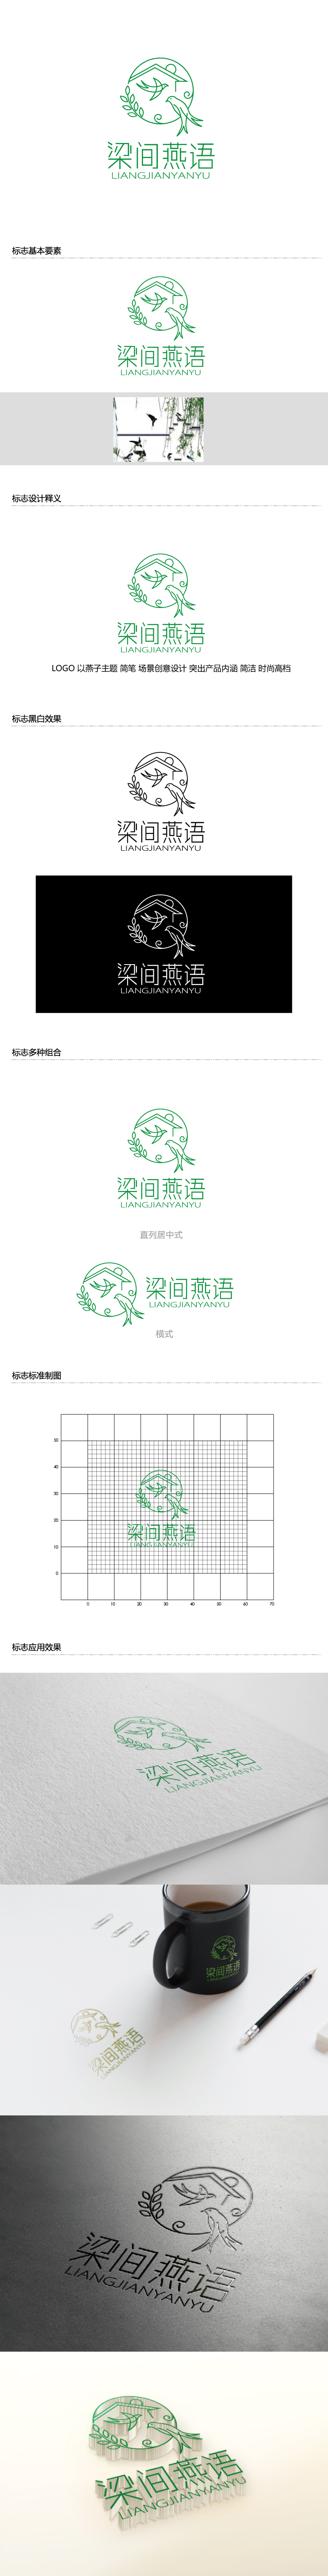 张俊的梁间燕语食品销售logo设计